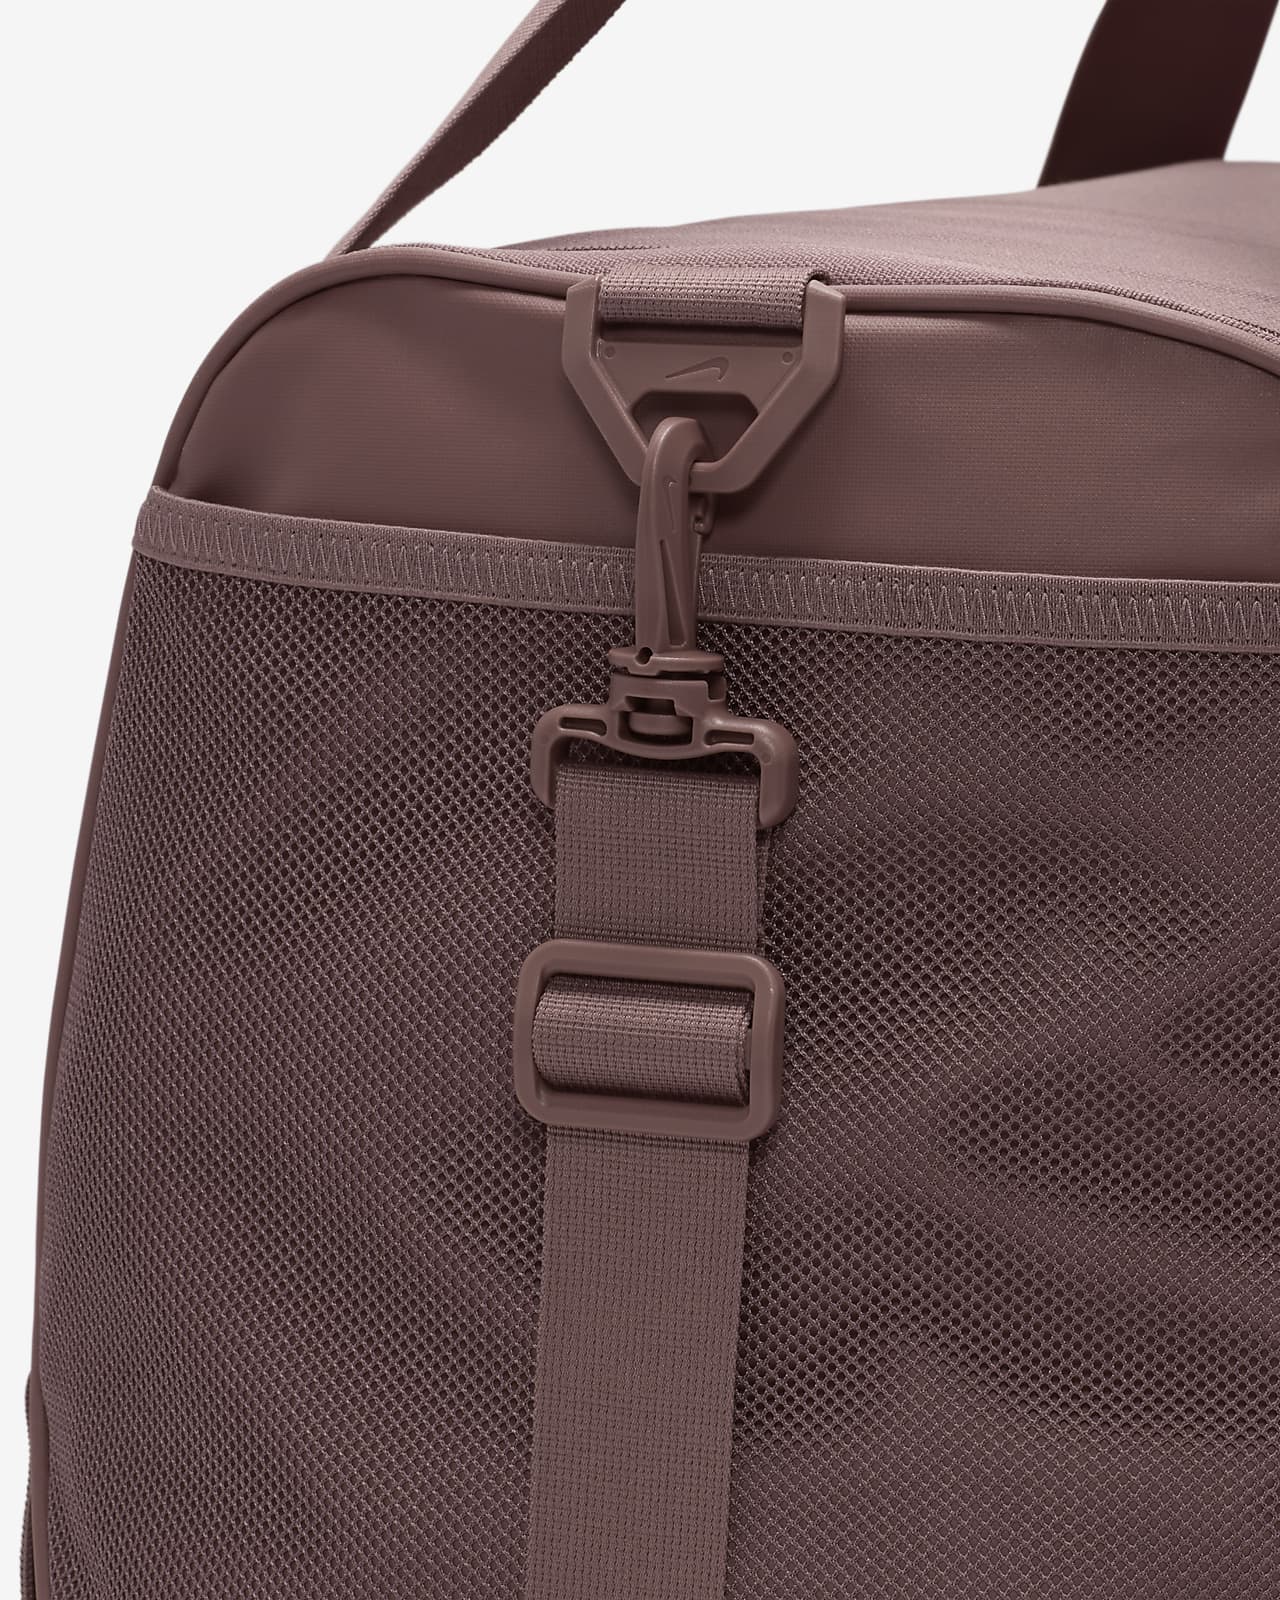 Nike Unisex Brasilia 9.5 Training Duffel Bag (Medium, 60L)